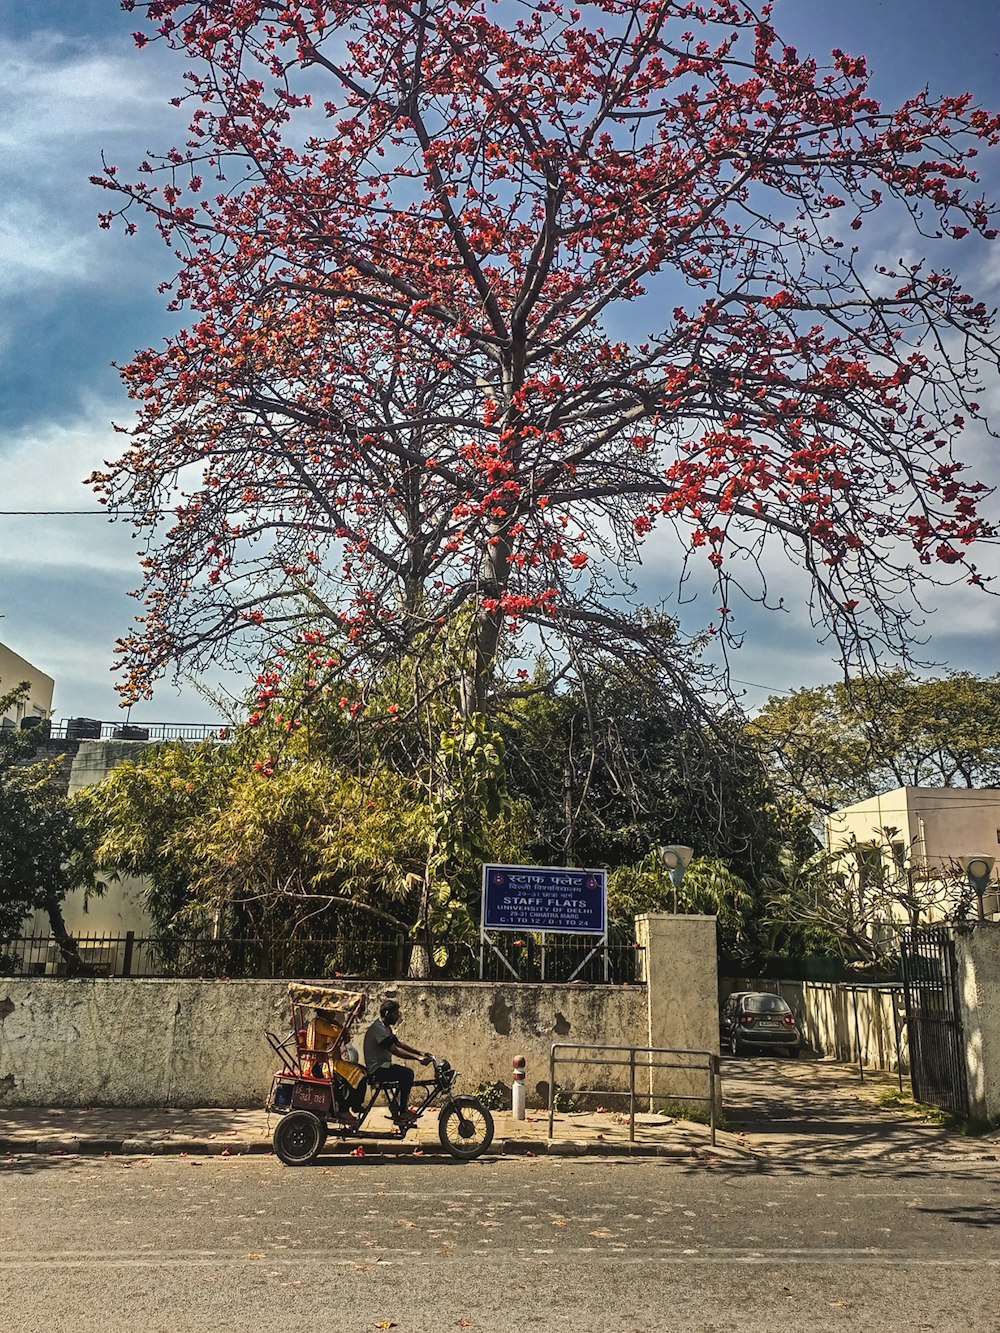 une moto garée à côté d’un arbre avec des fleurs rouges